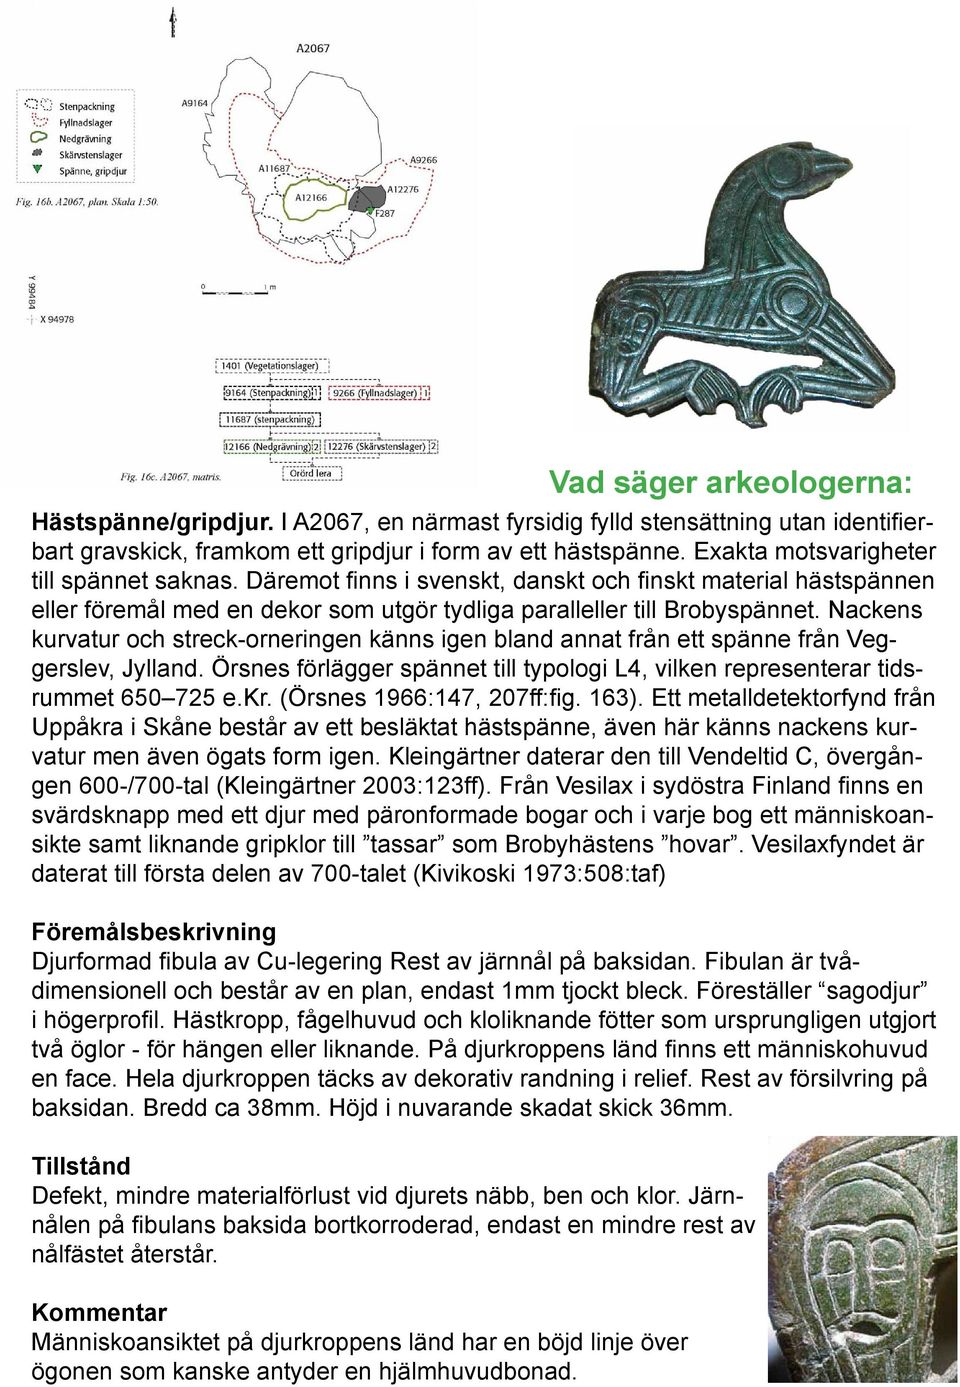 Nackens kurvatur och streck-orneringen känns igen bland annat från ett spänne från Veggerslev, Jylland. Örsnes förlägger spännet till typologi L4, vilken representerar tidsrummet 650 725 e.kr.